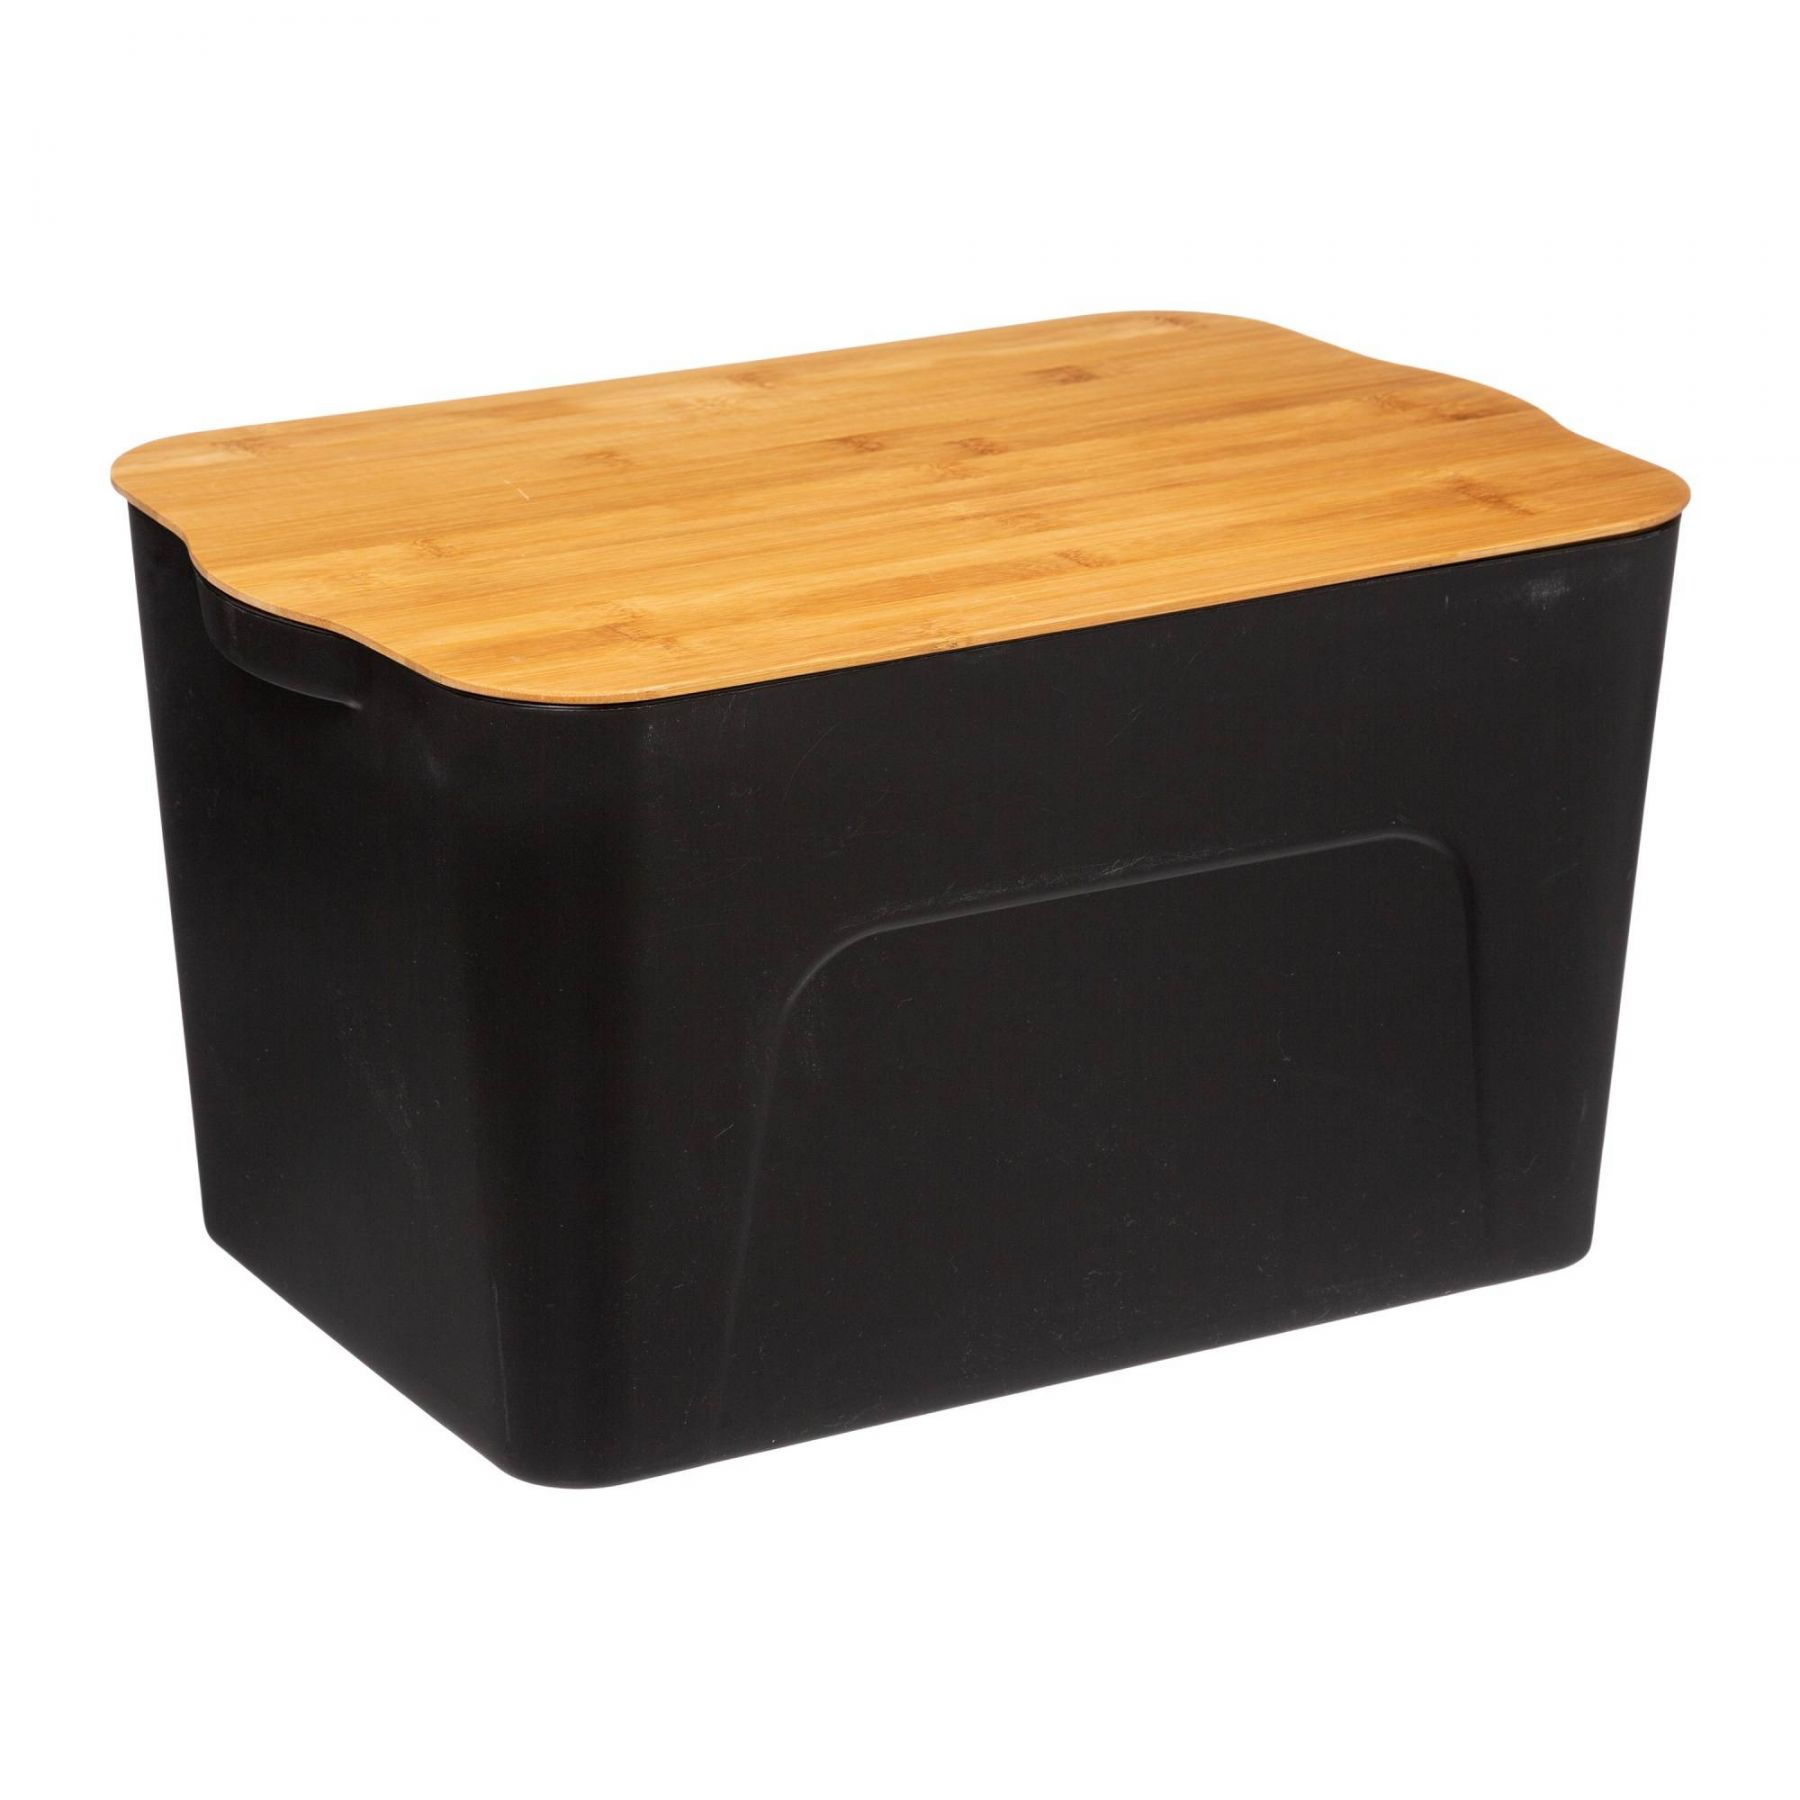 5five Simply Smart Plastový box s bambusovým víkem, 24 l - EDAXO.CZ s.r.o.